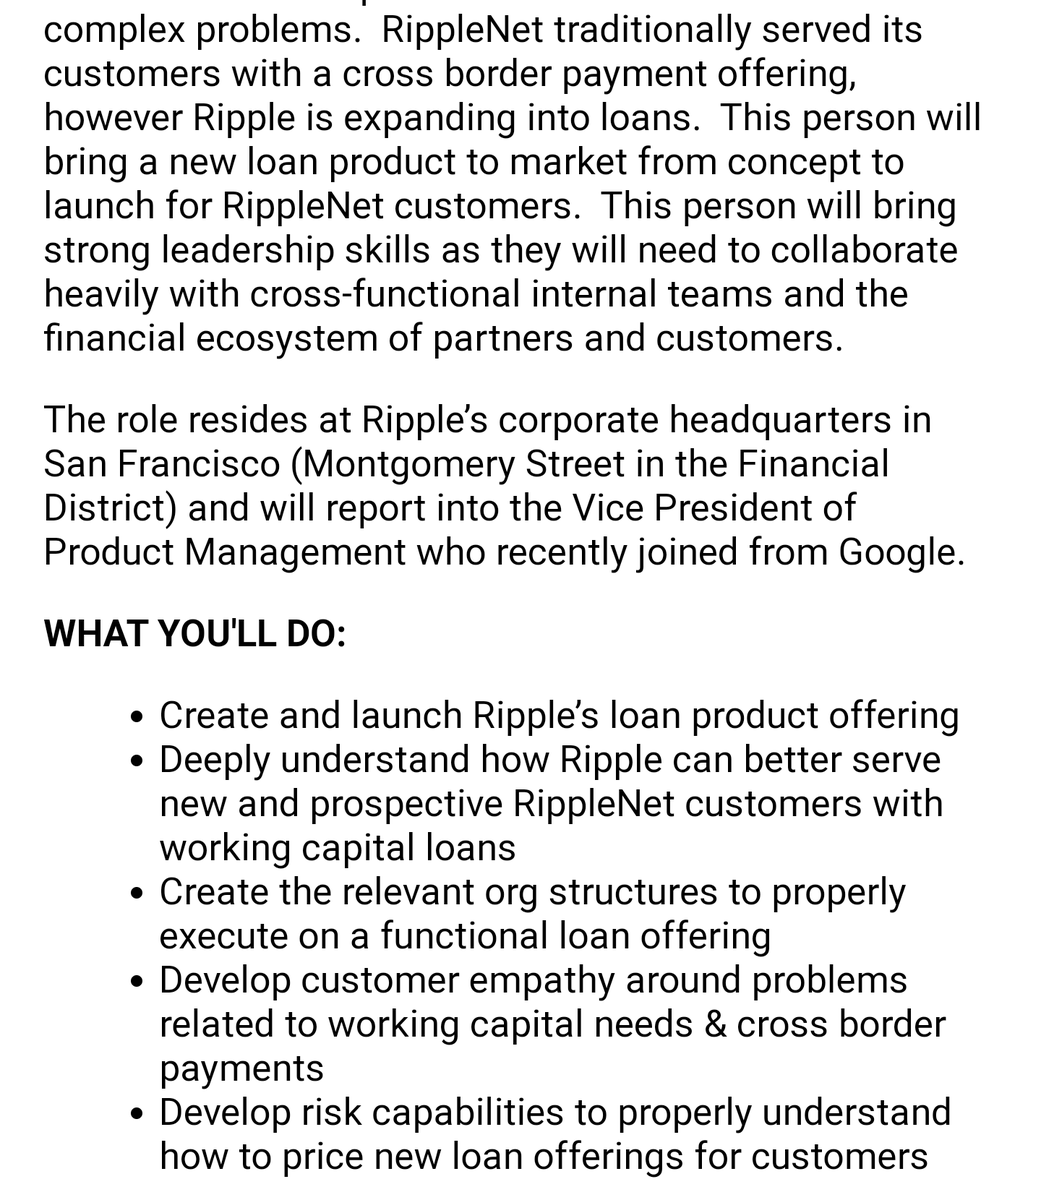 BREAKING:Ripple is expanding into working capital lending for RippleNet customers.  https://twitter.com/ashgoblue/status/1260336603395788803